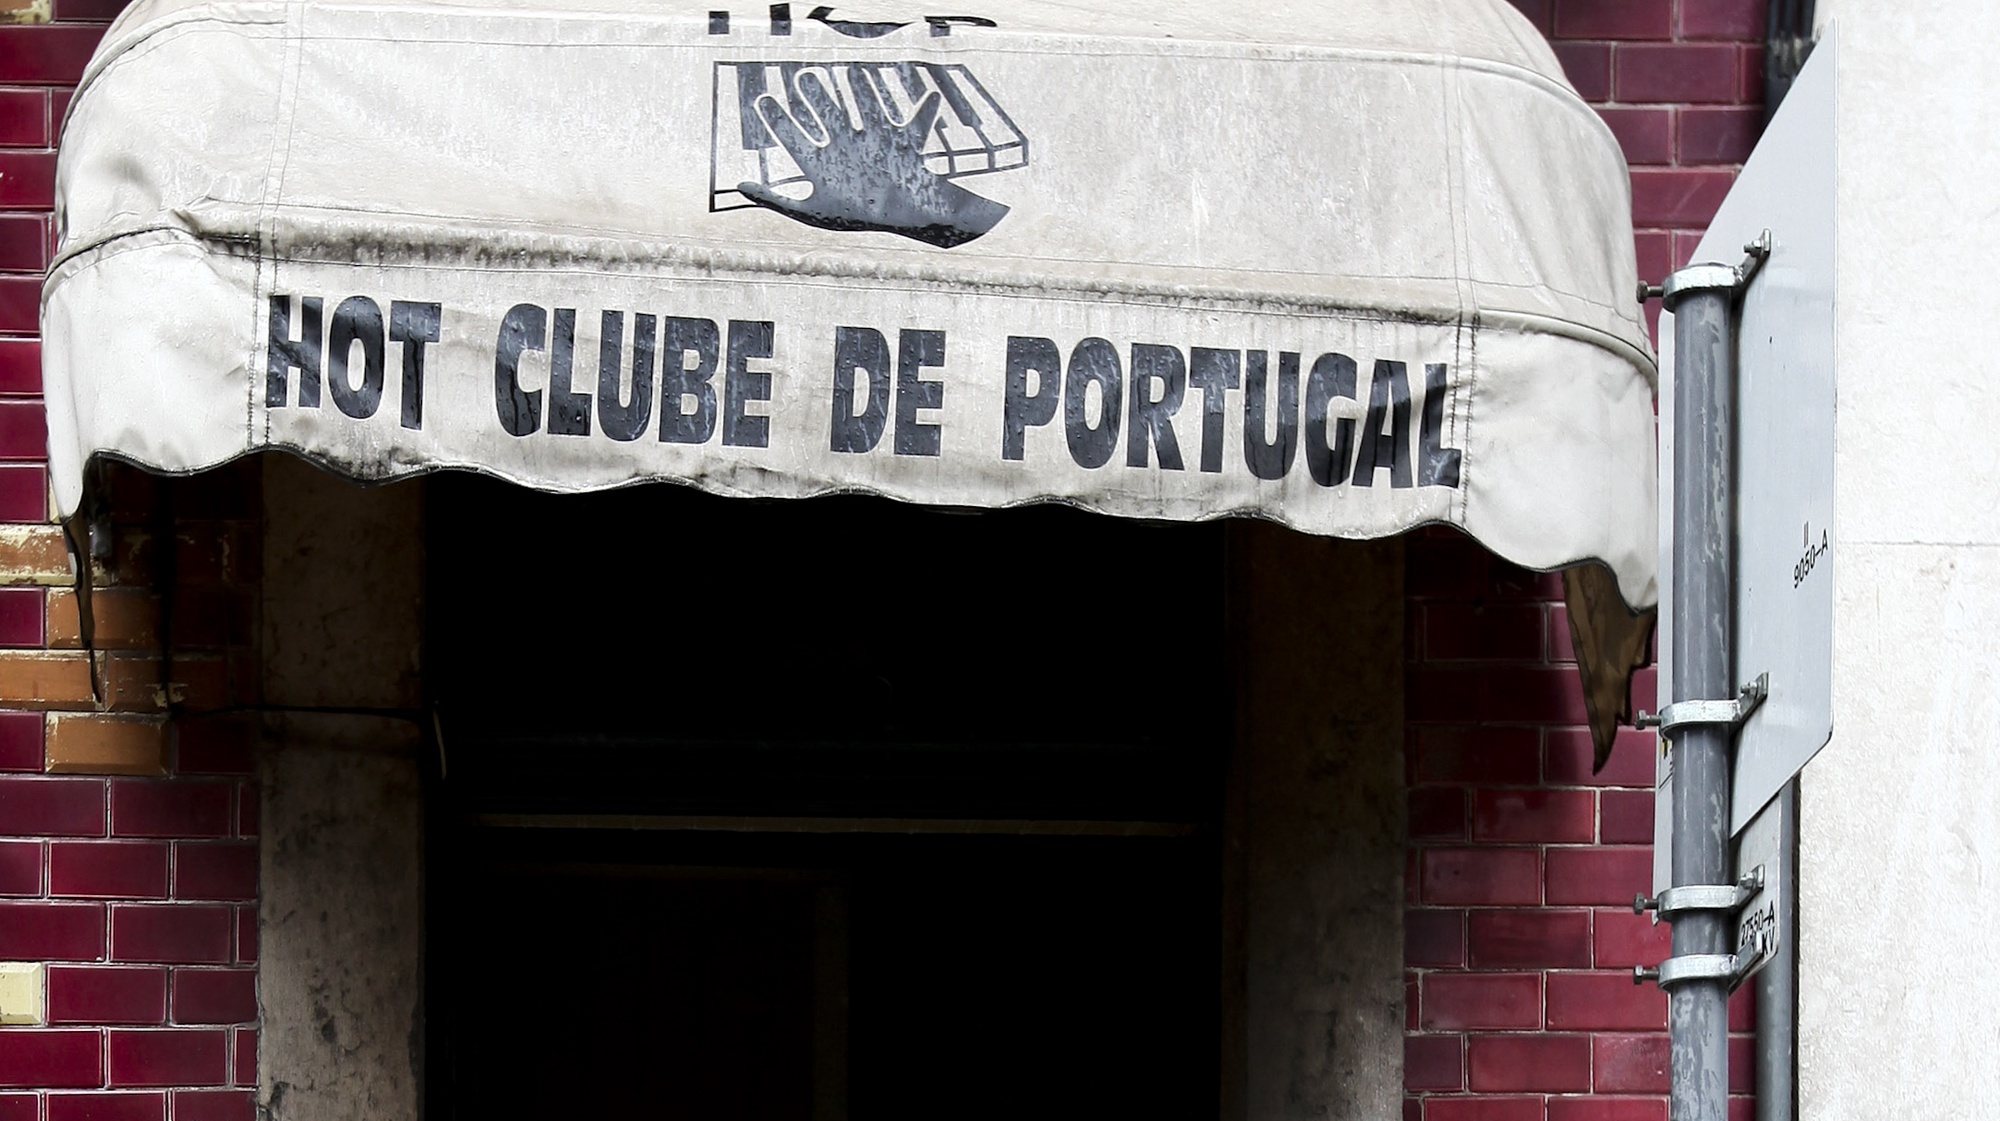 Entrada do clube de jazz, Hot Clube de Portugal, na Praça da Alegria, em Lisboa, 22 de Dezembro de 2009. MIGUEL A. LOPES / LUSA